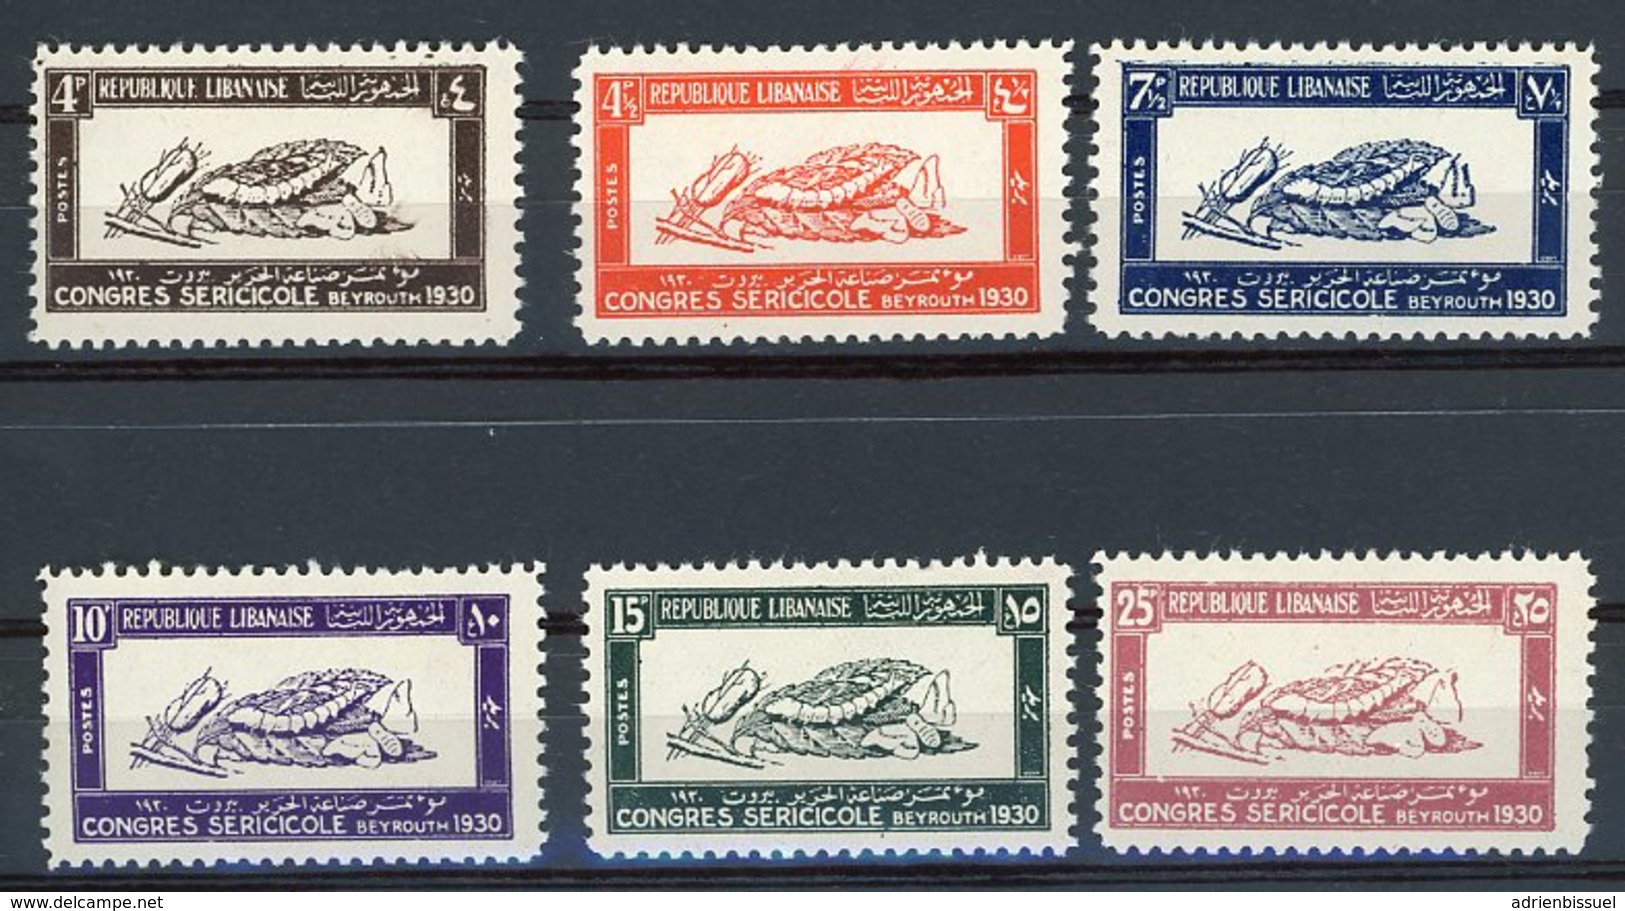 N° 122 à 127 ** MNH Cote 155 €. Série "congrès De Beyrouth" 1930. Neufs Sans Charnières, (rare Pour Cette Série) - Unused Stamps